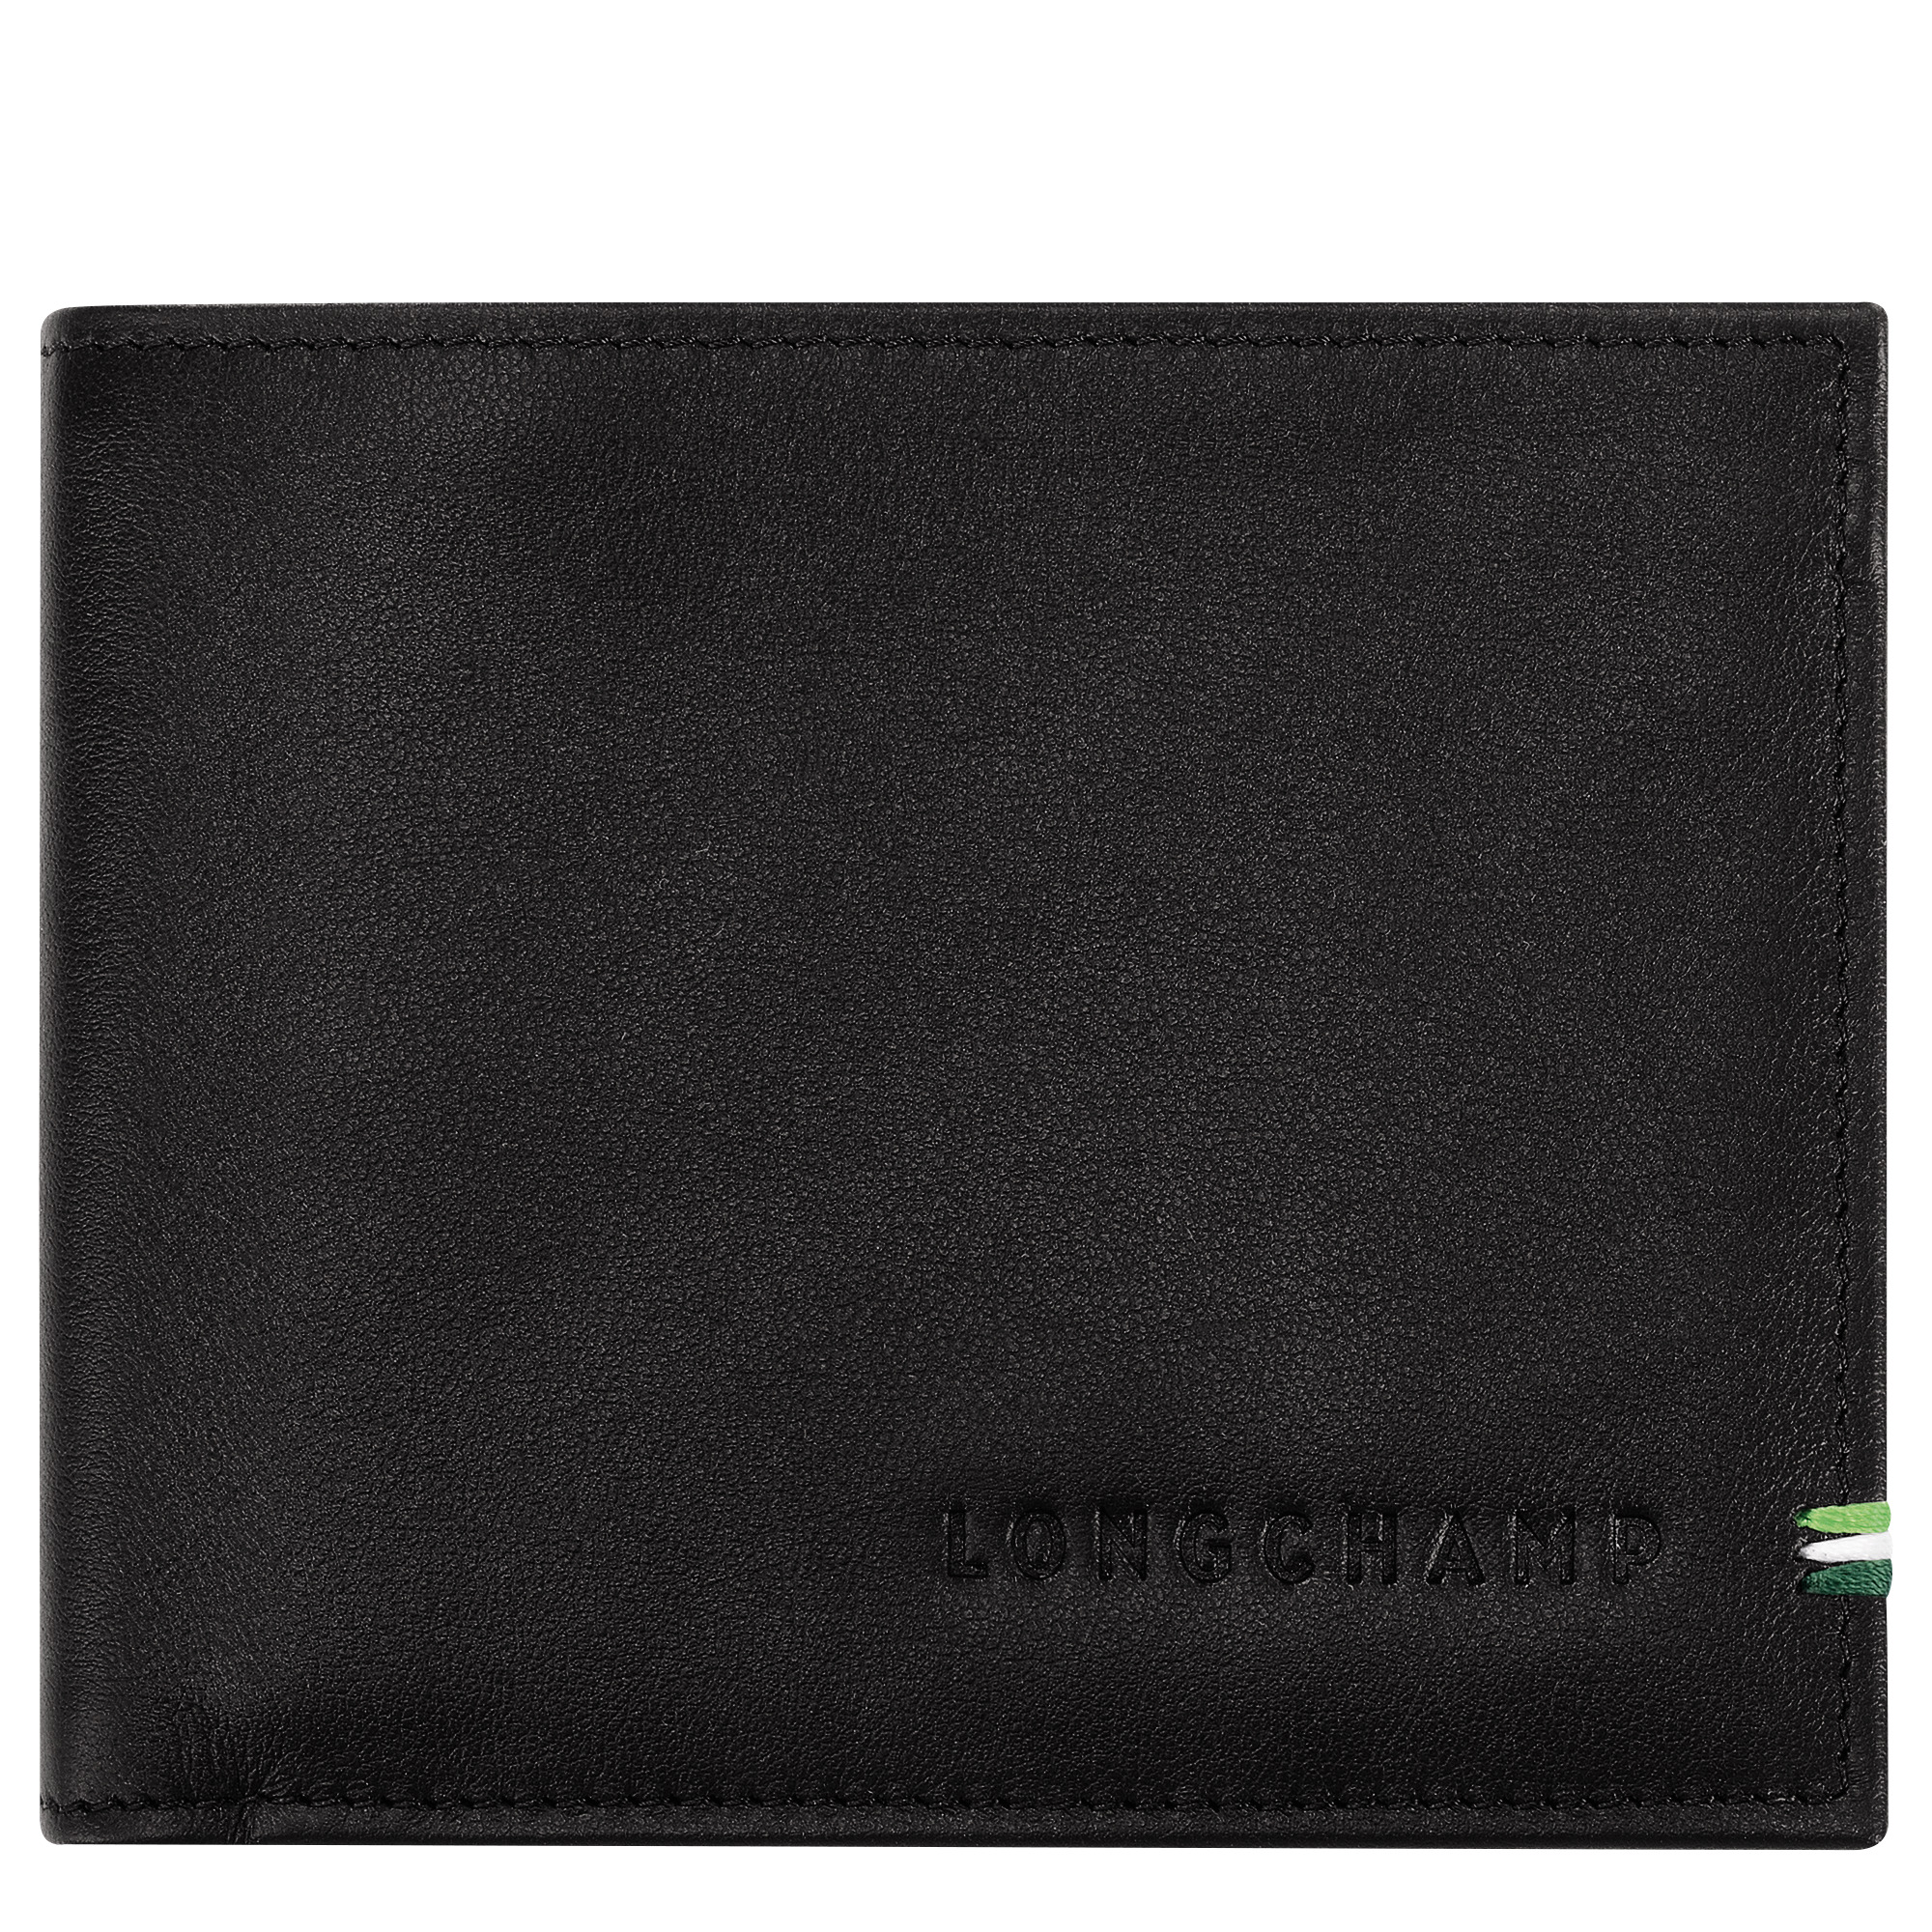 Longchamp sur Seine Wallet Black - Leather - 1